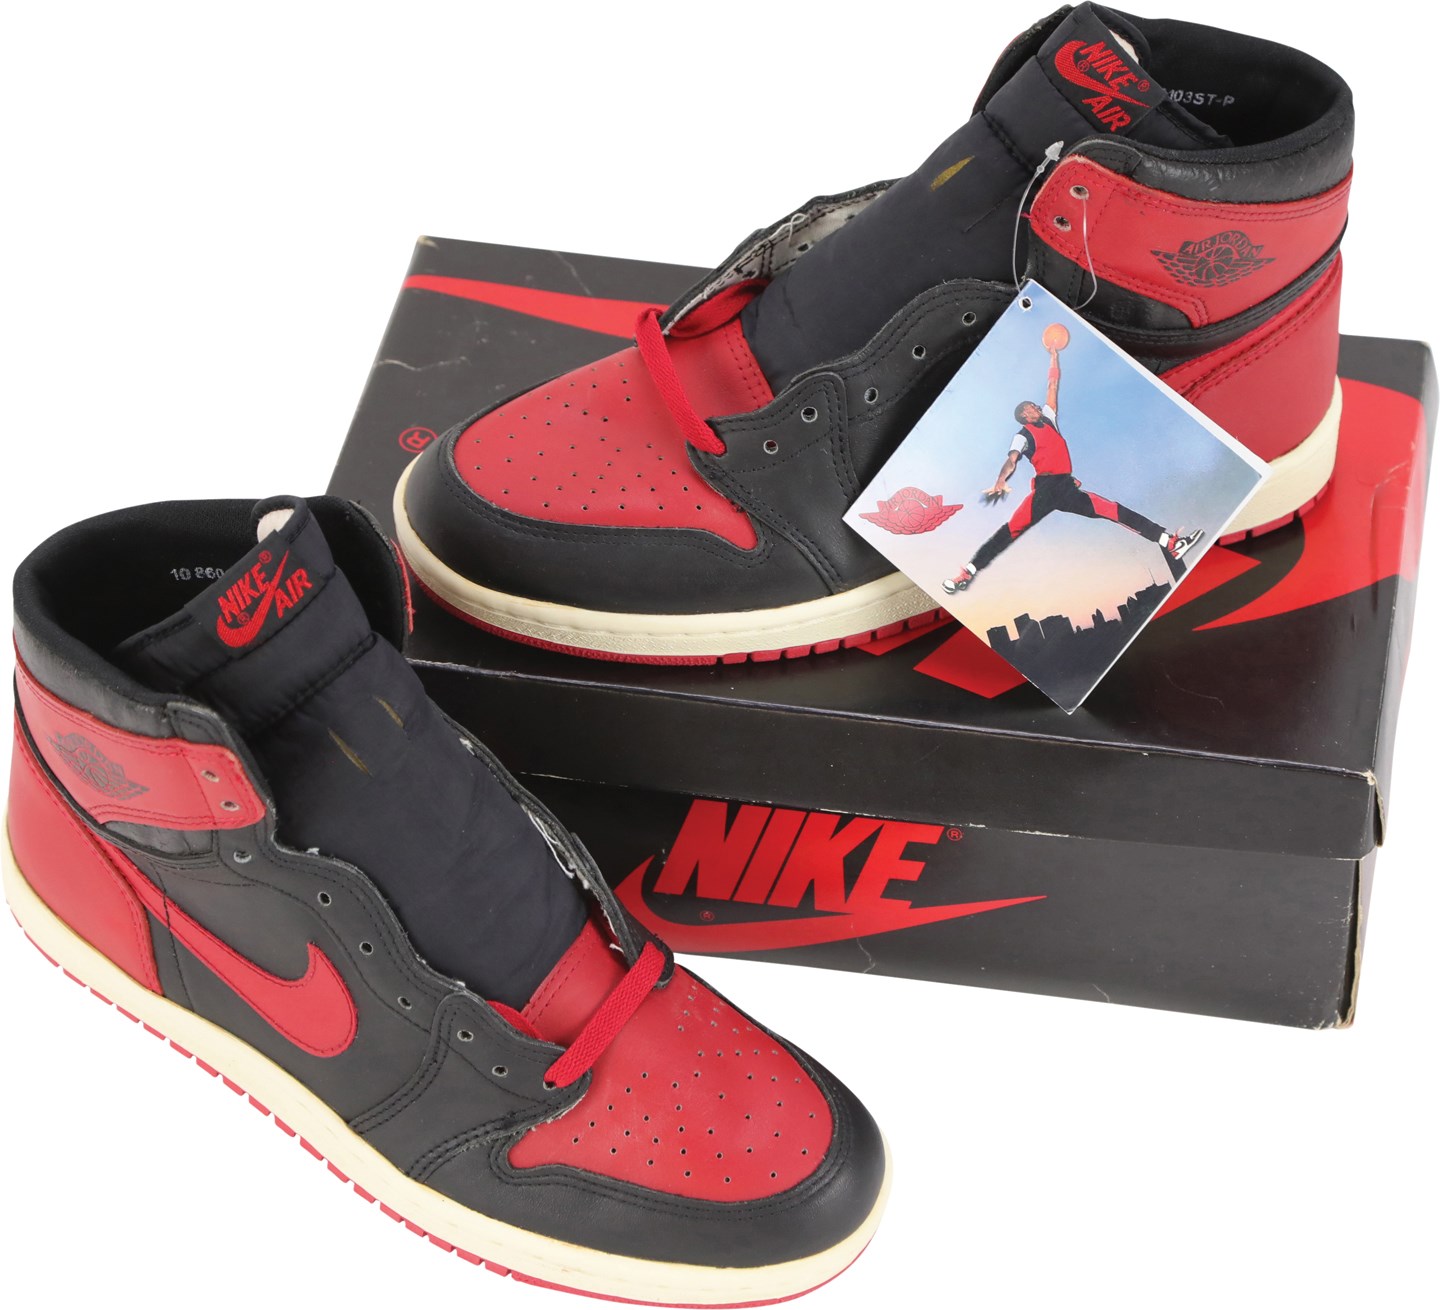 Basketball - 1986 Original Nike Air Jordan I 'Banned' Sneakers